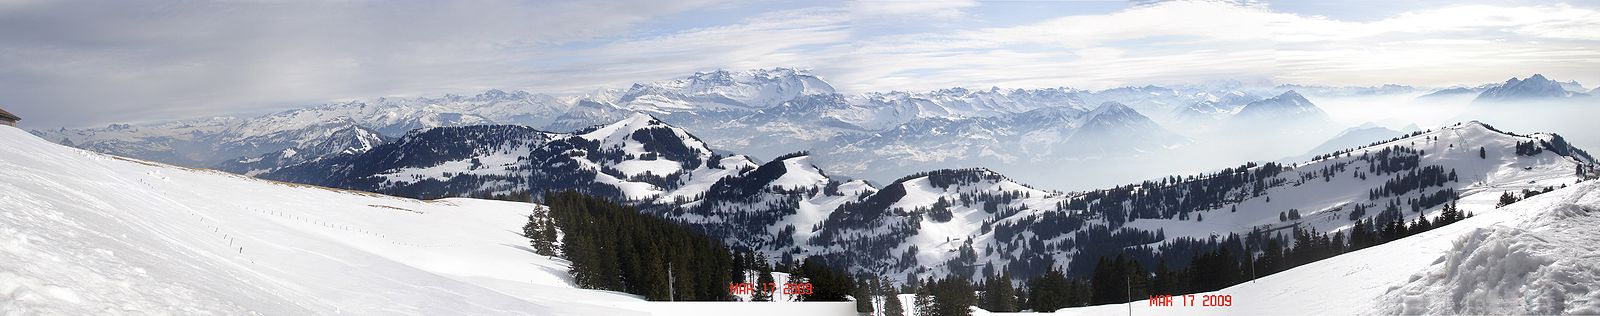 Panorámica de los alpes suizos desde Rigi Kulm